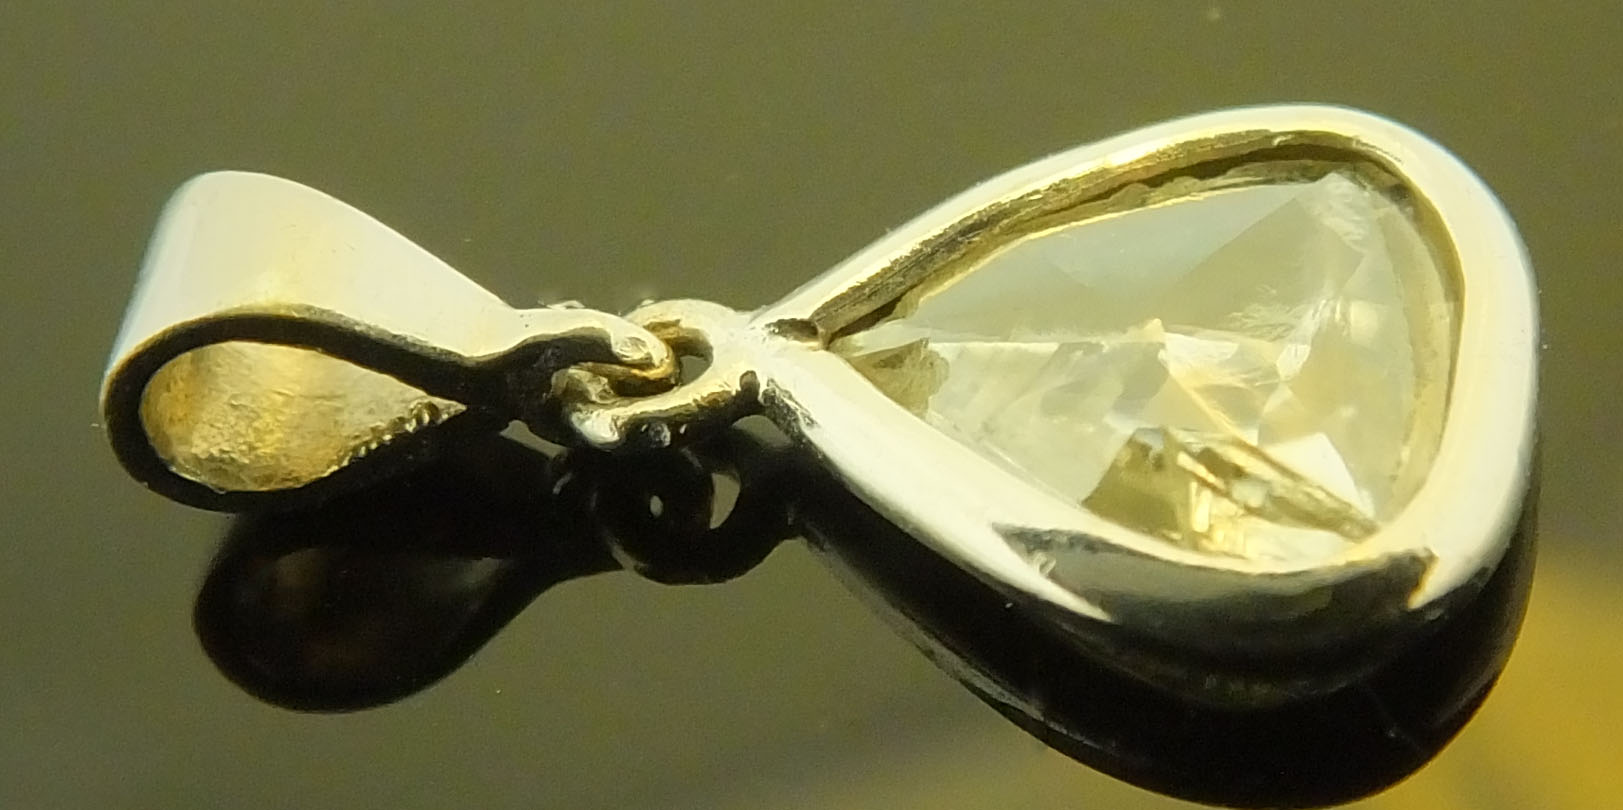 A rare 0.6 carat rose cut diamond pendant - Image 2 of 3